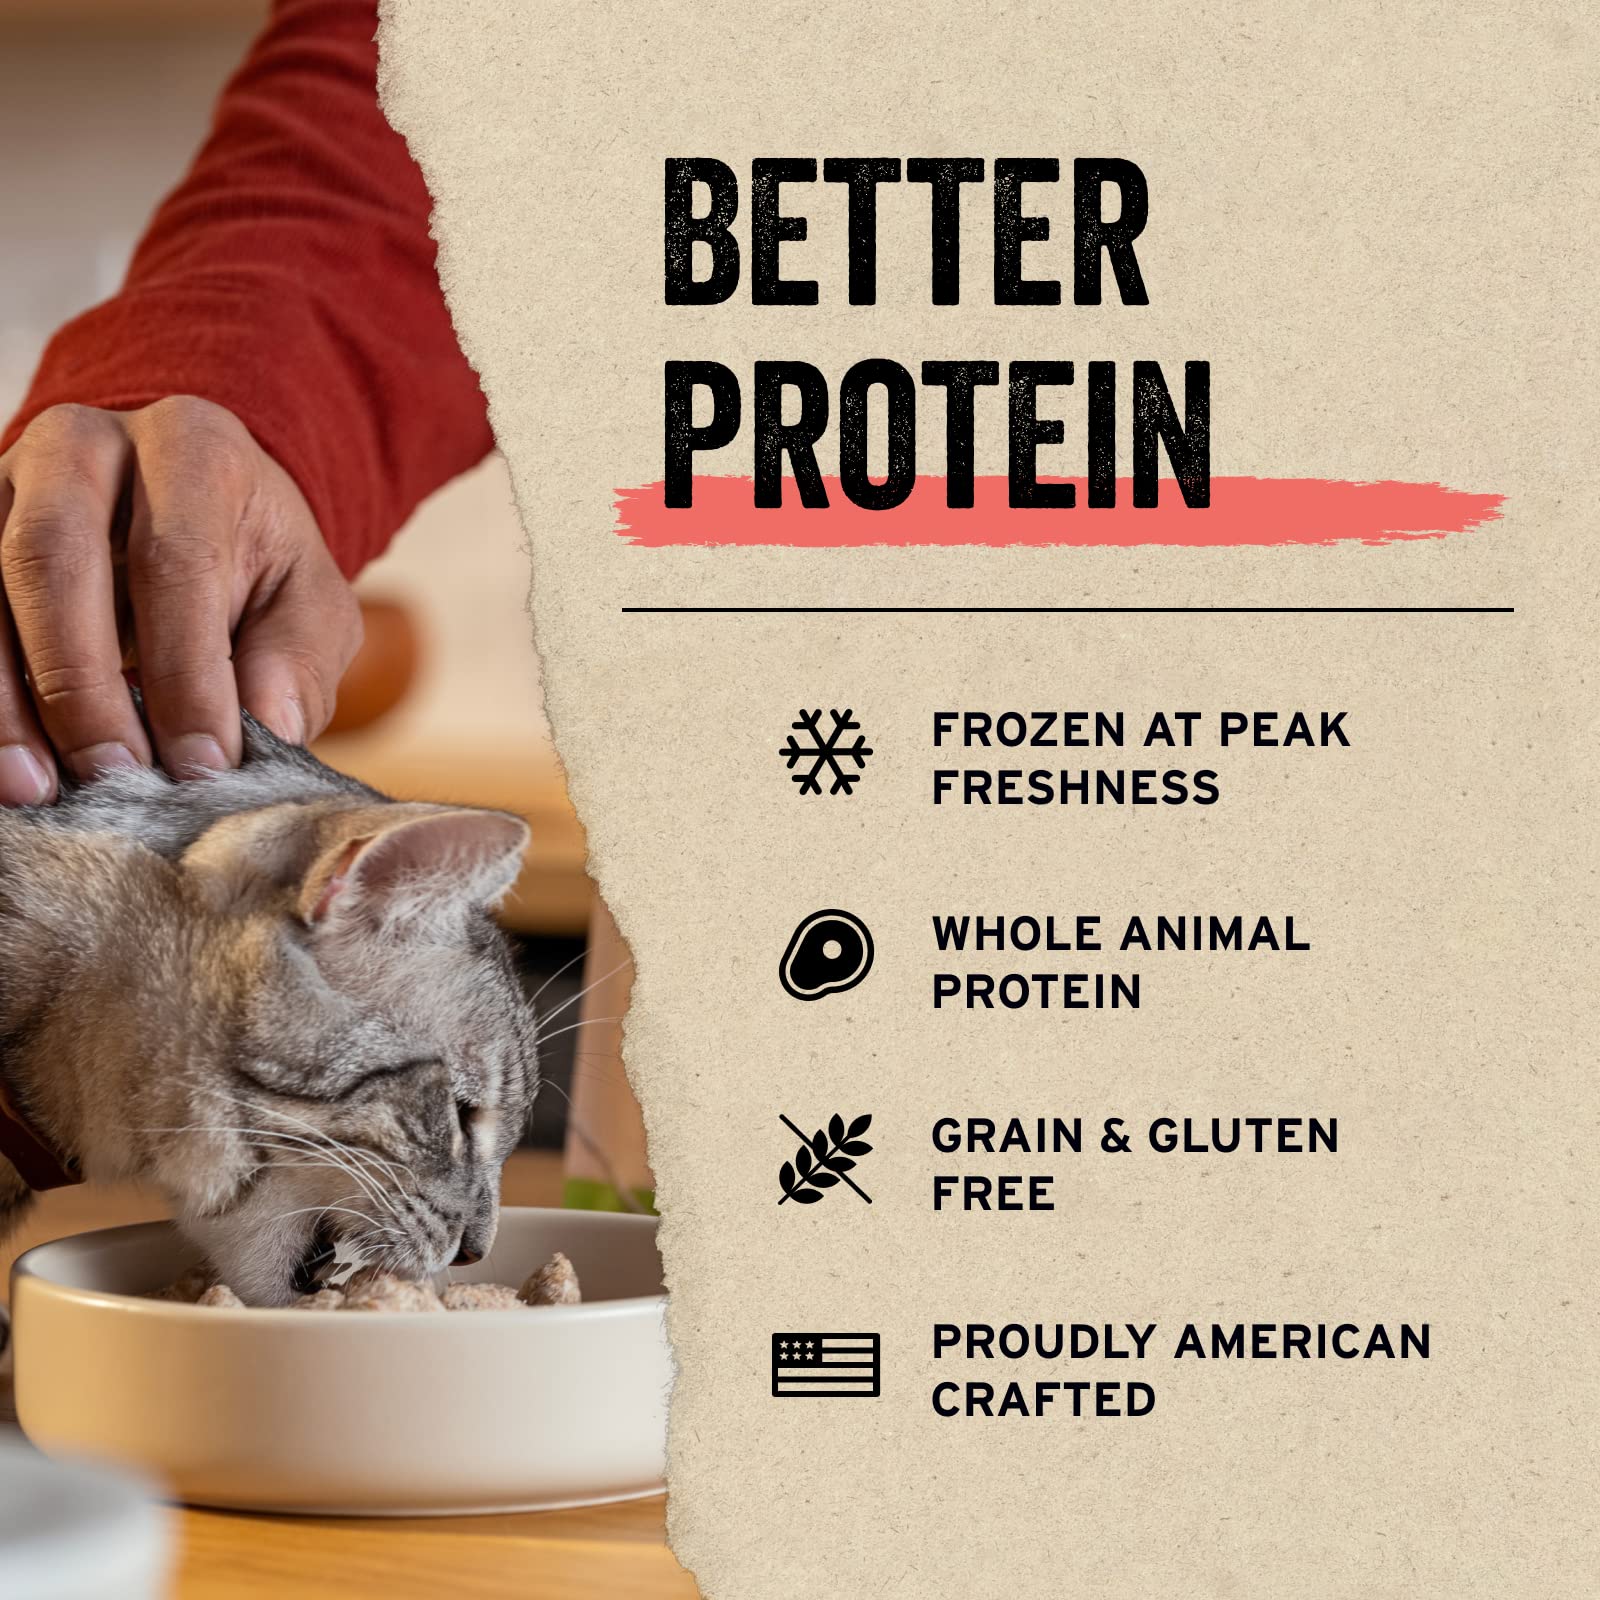 Vital Essential's Grain-Free Pork Mini Patties Freeze-Dried Cat Food - 3.75 Oz  